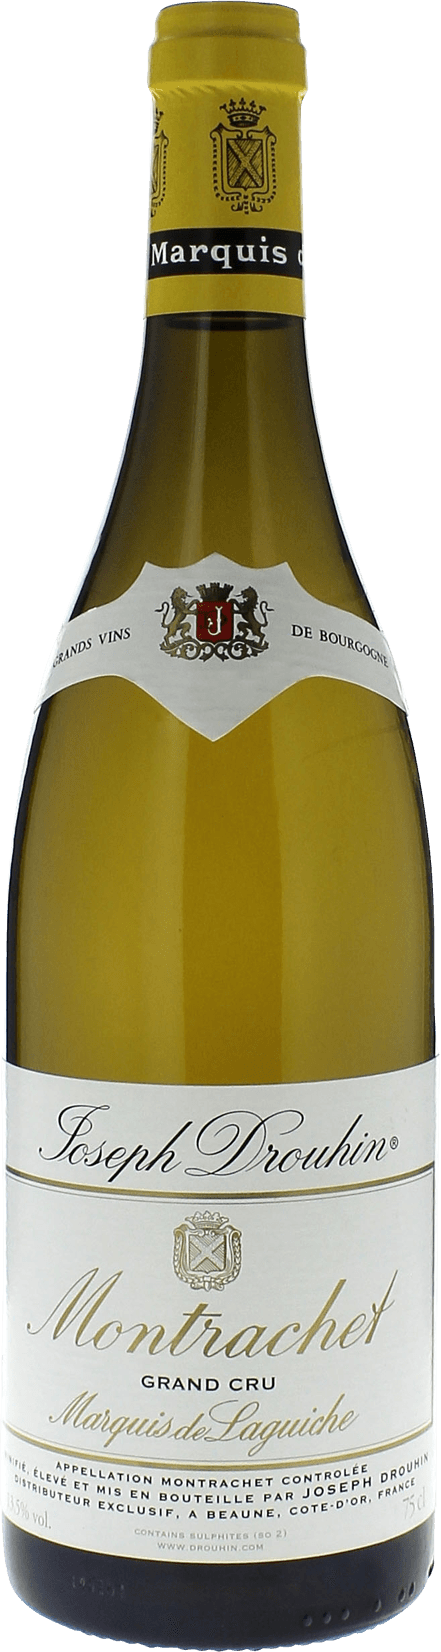 Montrachet marquis de laguiche 2015 Domaine DROUHIN, Bourgogne blanc